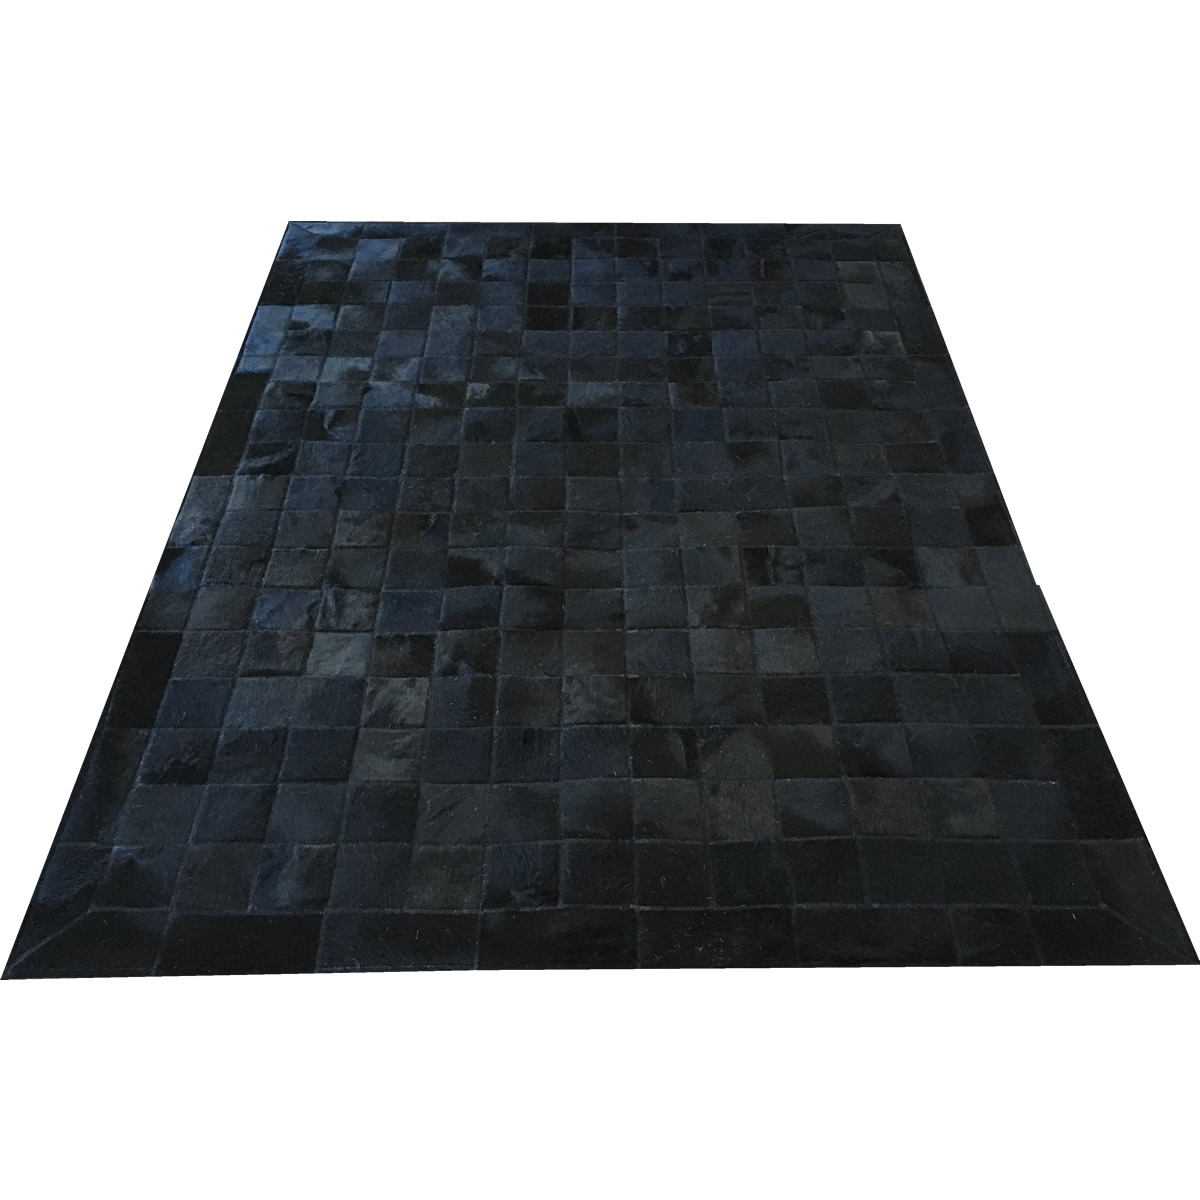 Tapete de couro preto 1,50x2,00 com bordas peça 10x10cm